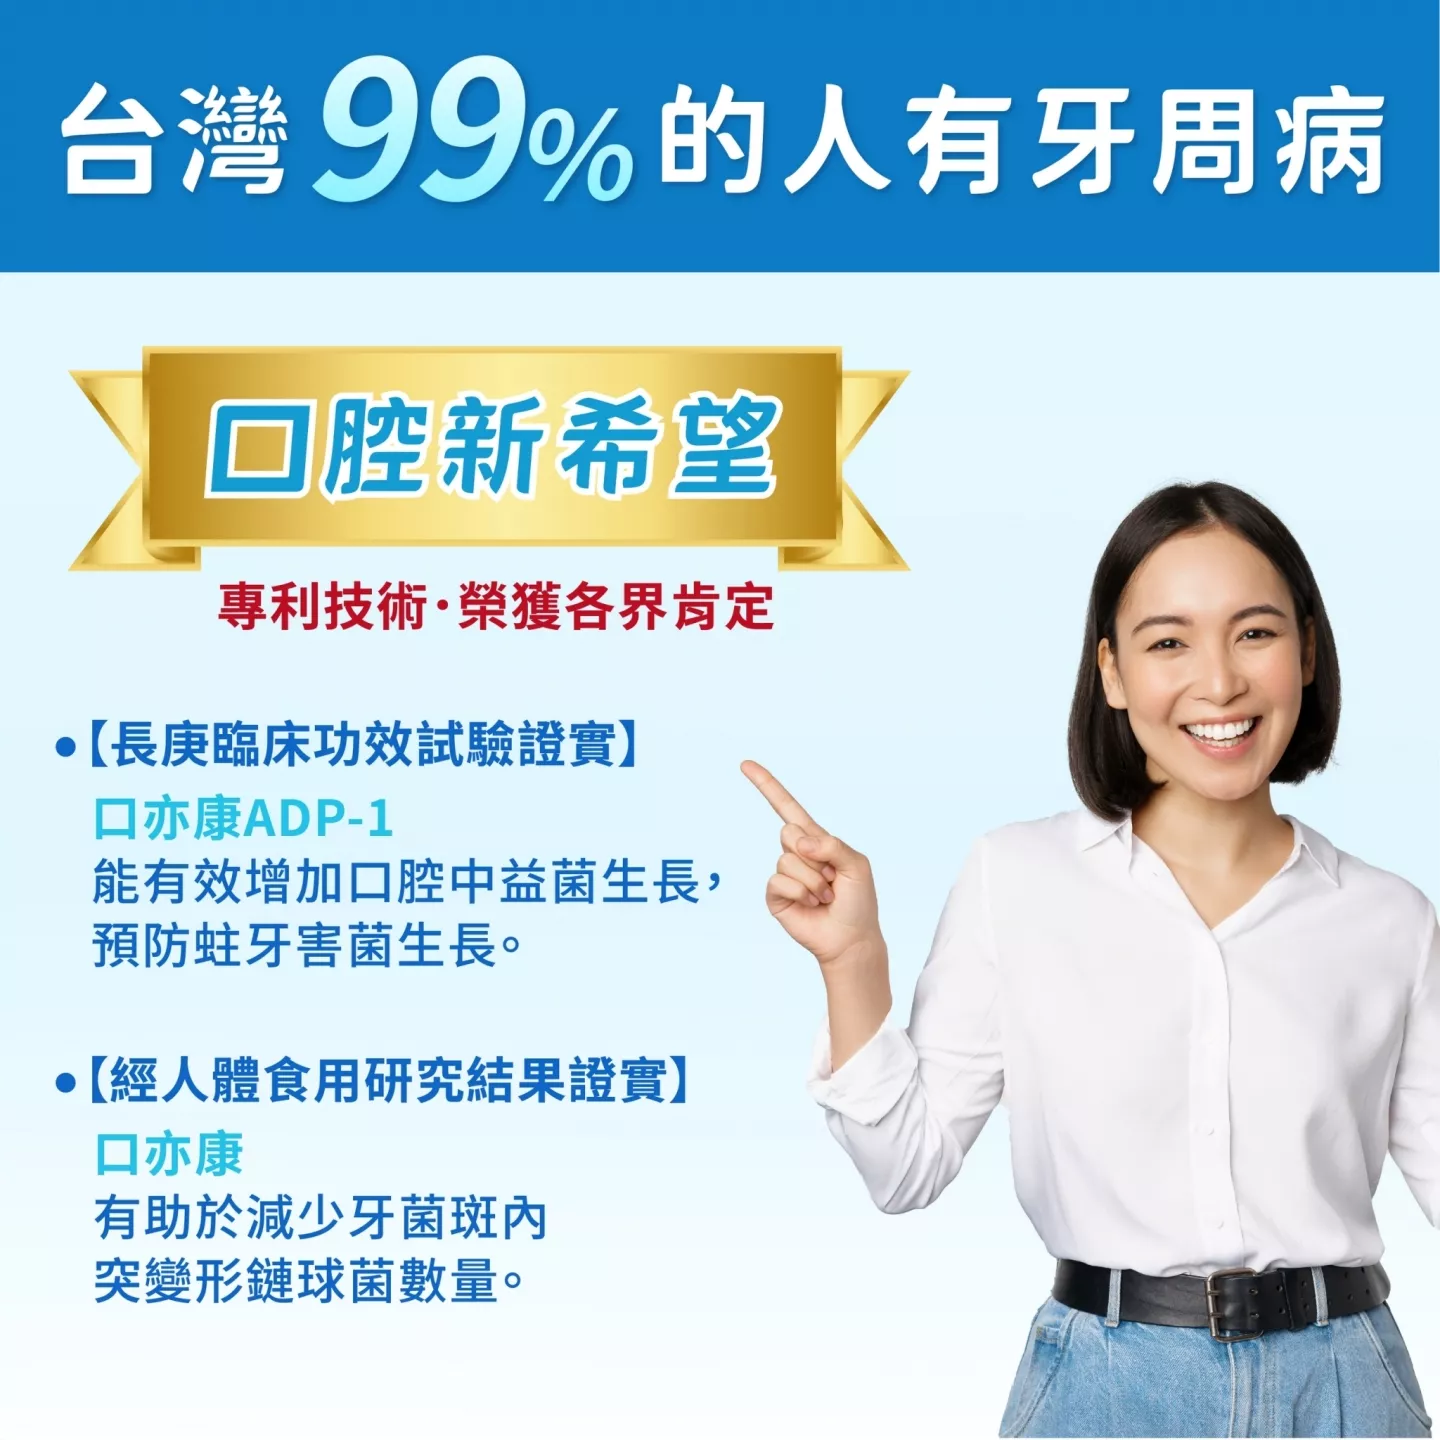 台灣99%的人有牙周病 專利技術 榮獲各界肯定